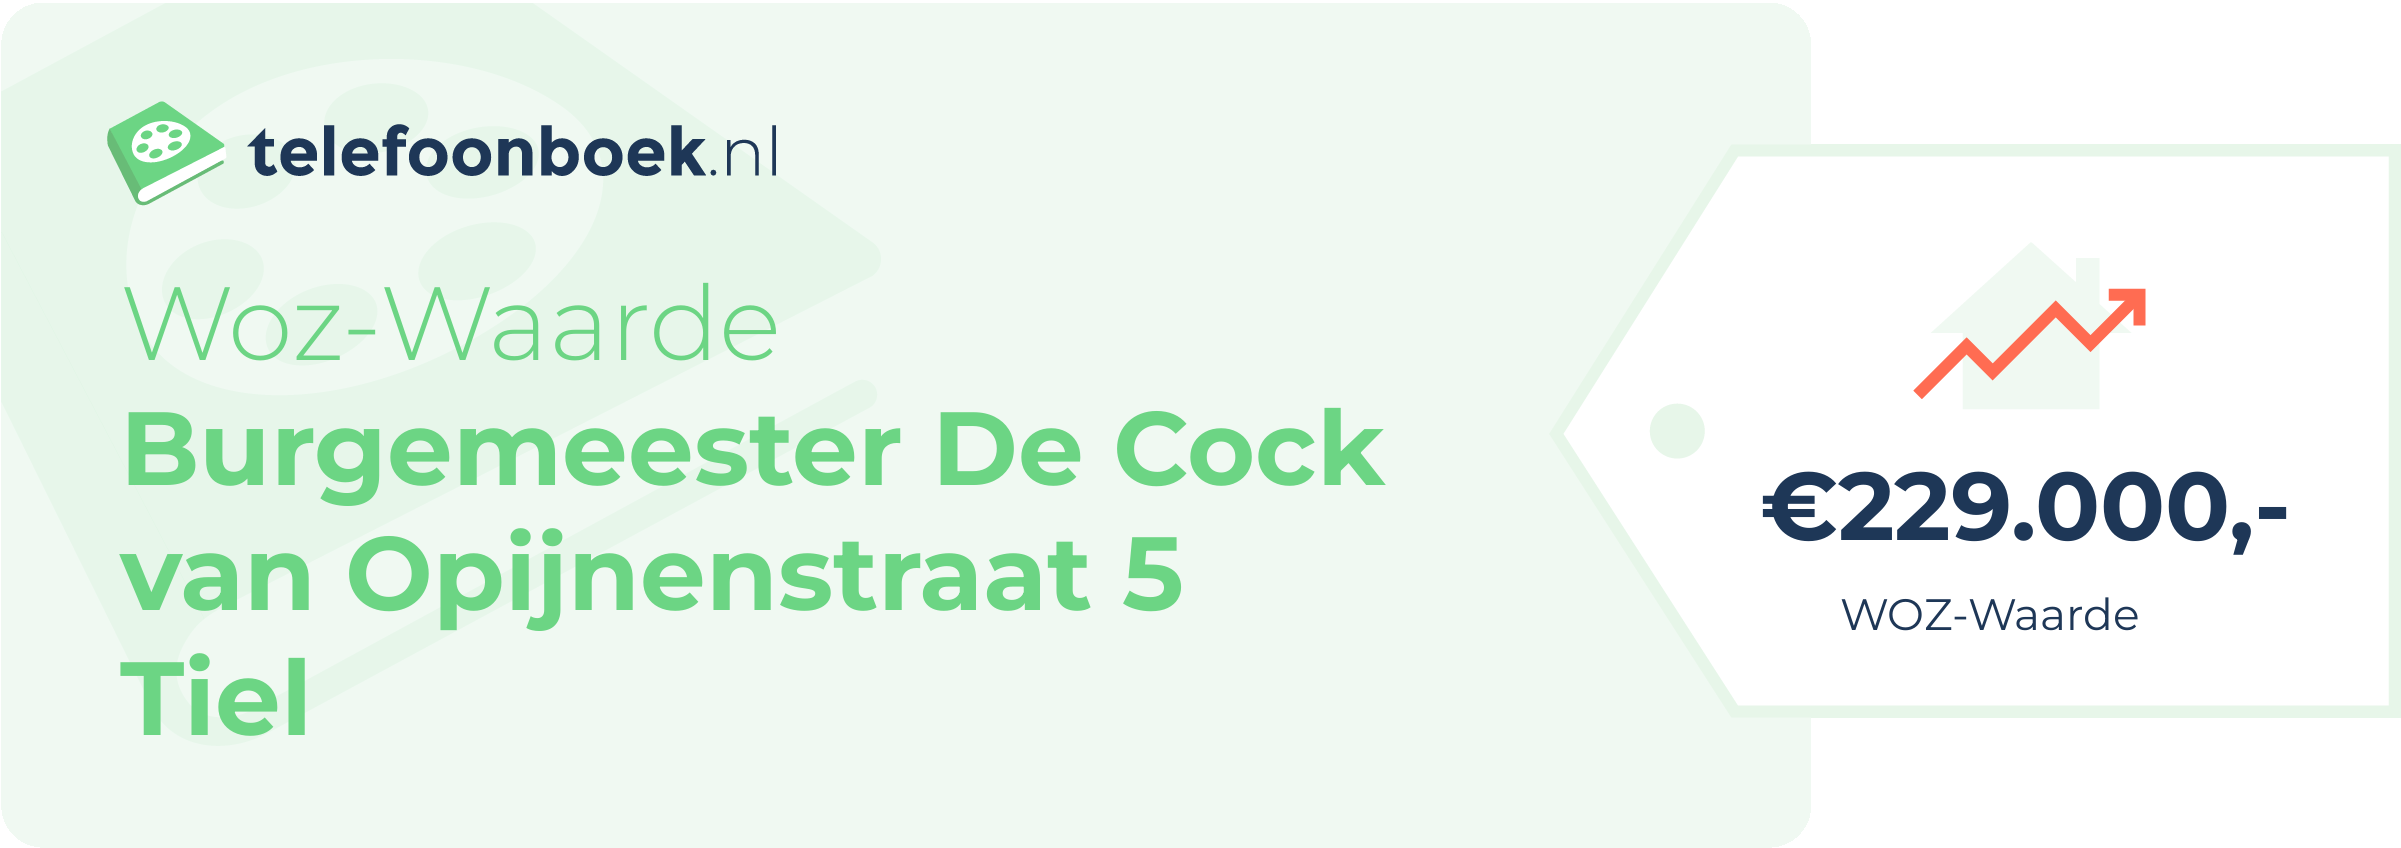 WOZ-waarde Burgemeester De Cock Van Opijnenstraat 5 Tiel